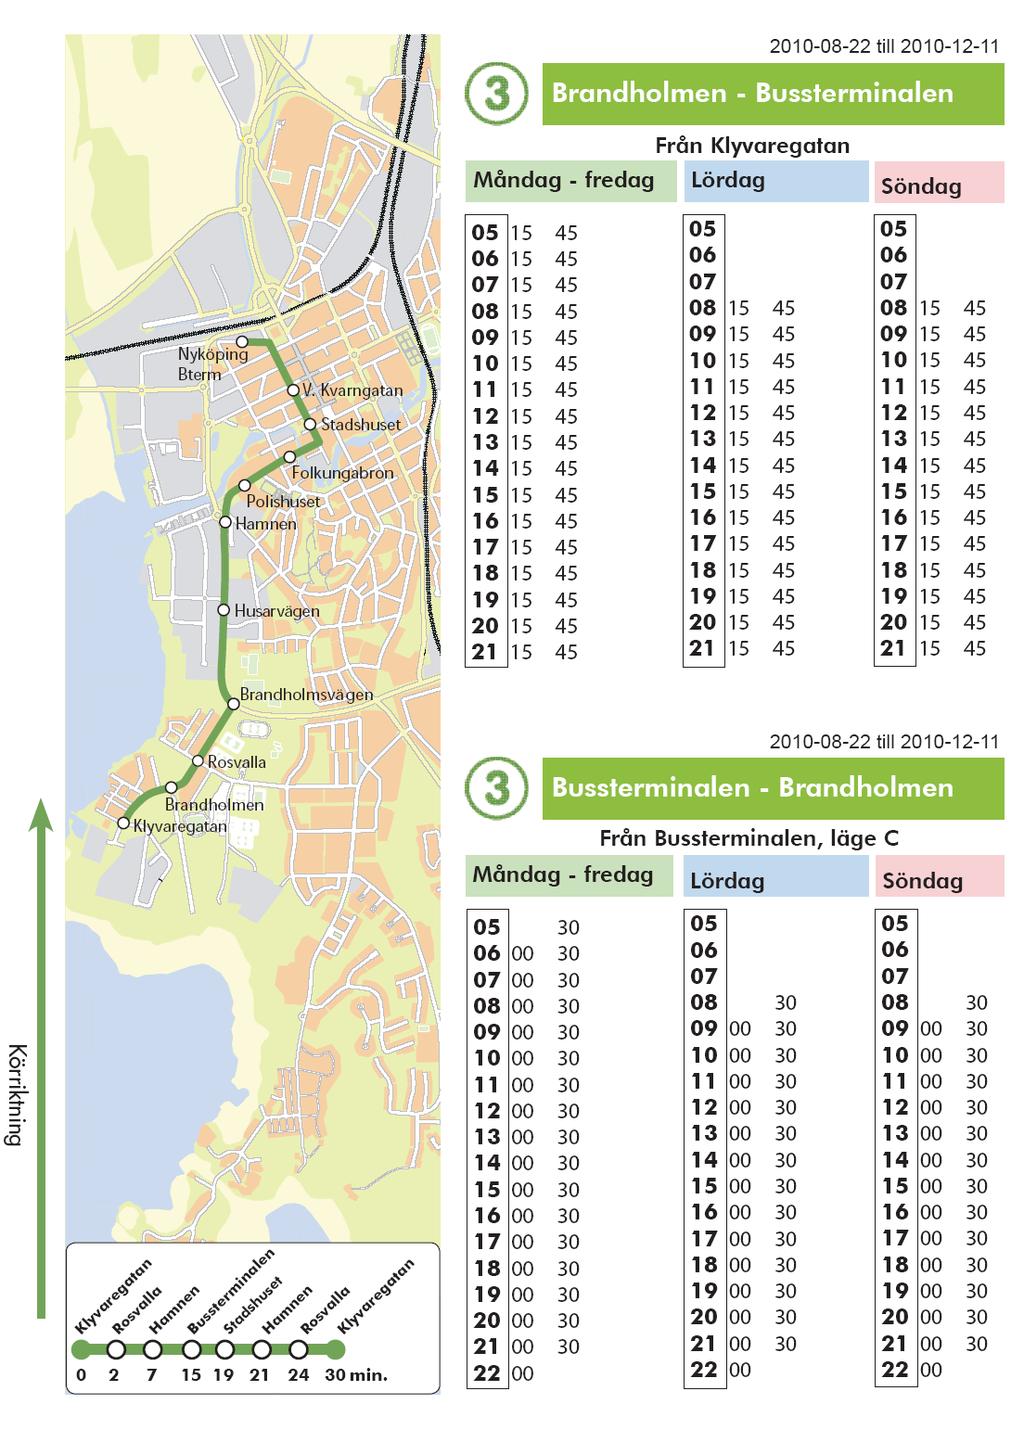 Det rapporten pekar på i detta exempel är Nyköpings kartor. För varje linje finns en karta som visar både körväg samt hållplatser inkl. hållplatsnamnen.